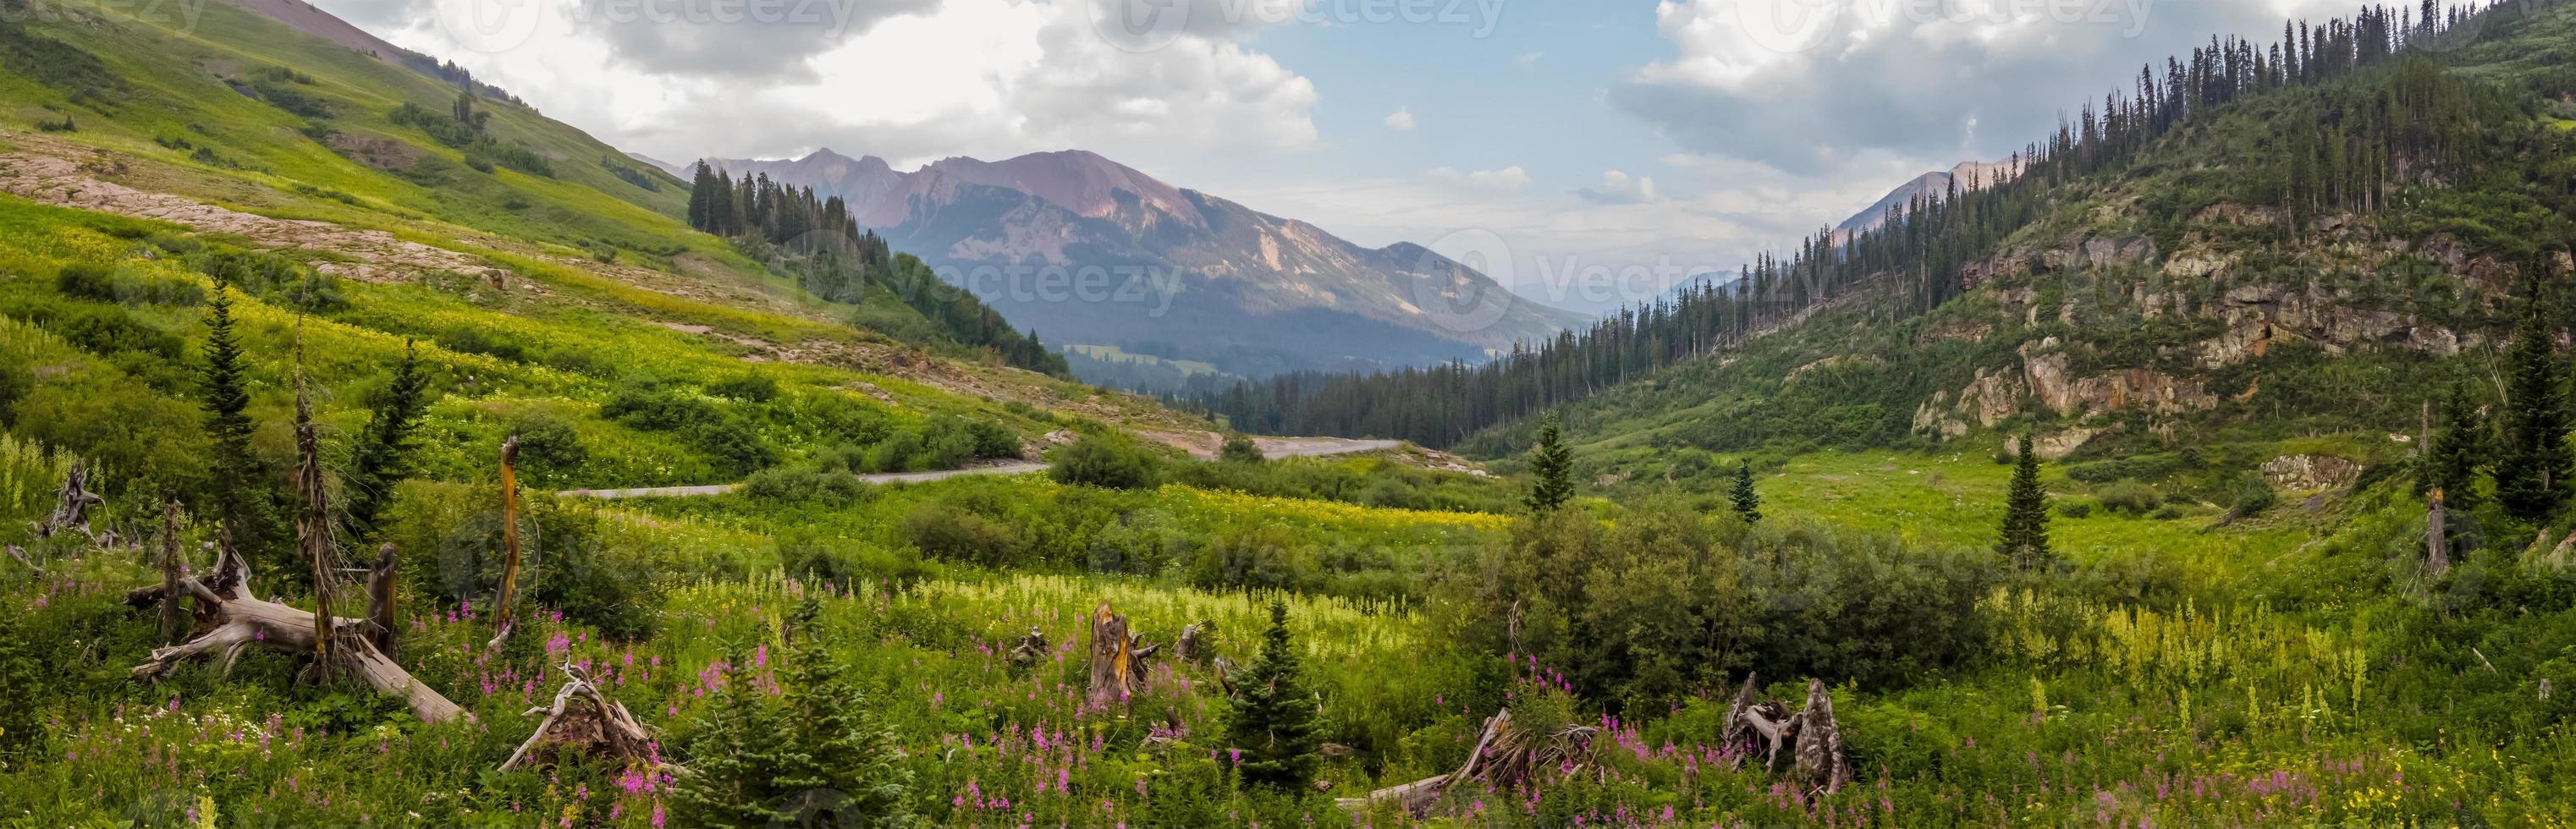 Panoramablick auf Wildblumenwiesen in Colorado Rocky Mountains in der Nähe von Crested Butte foto